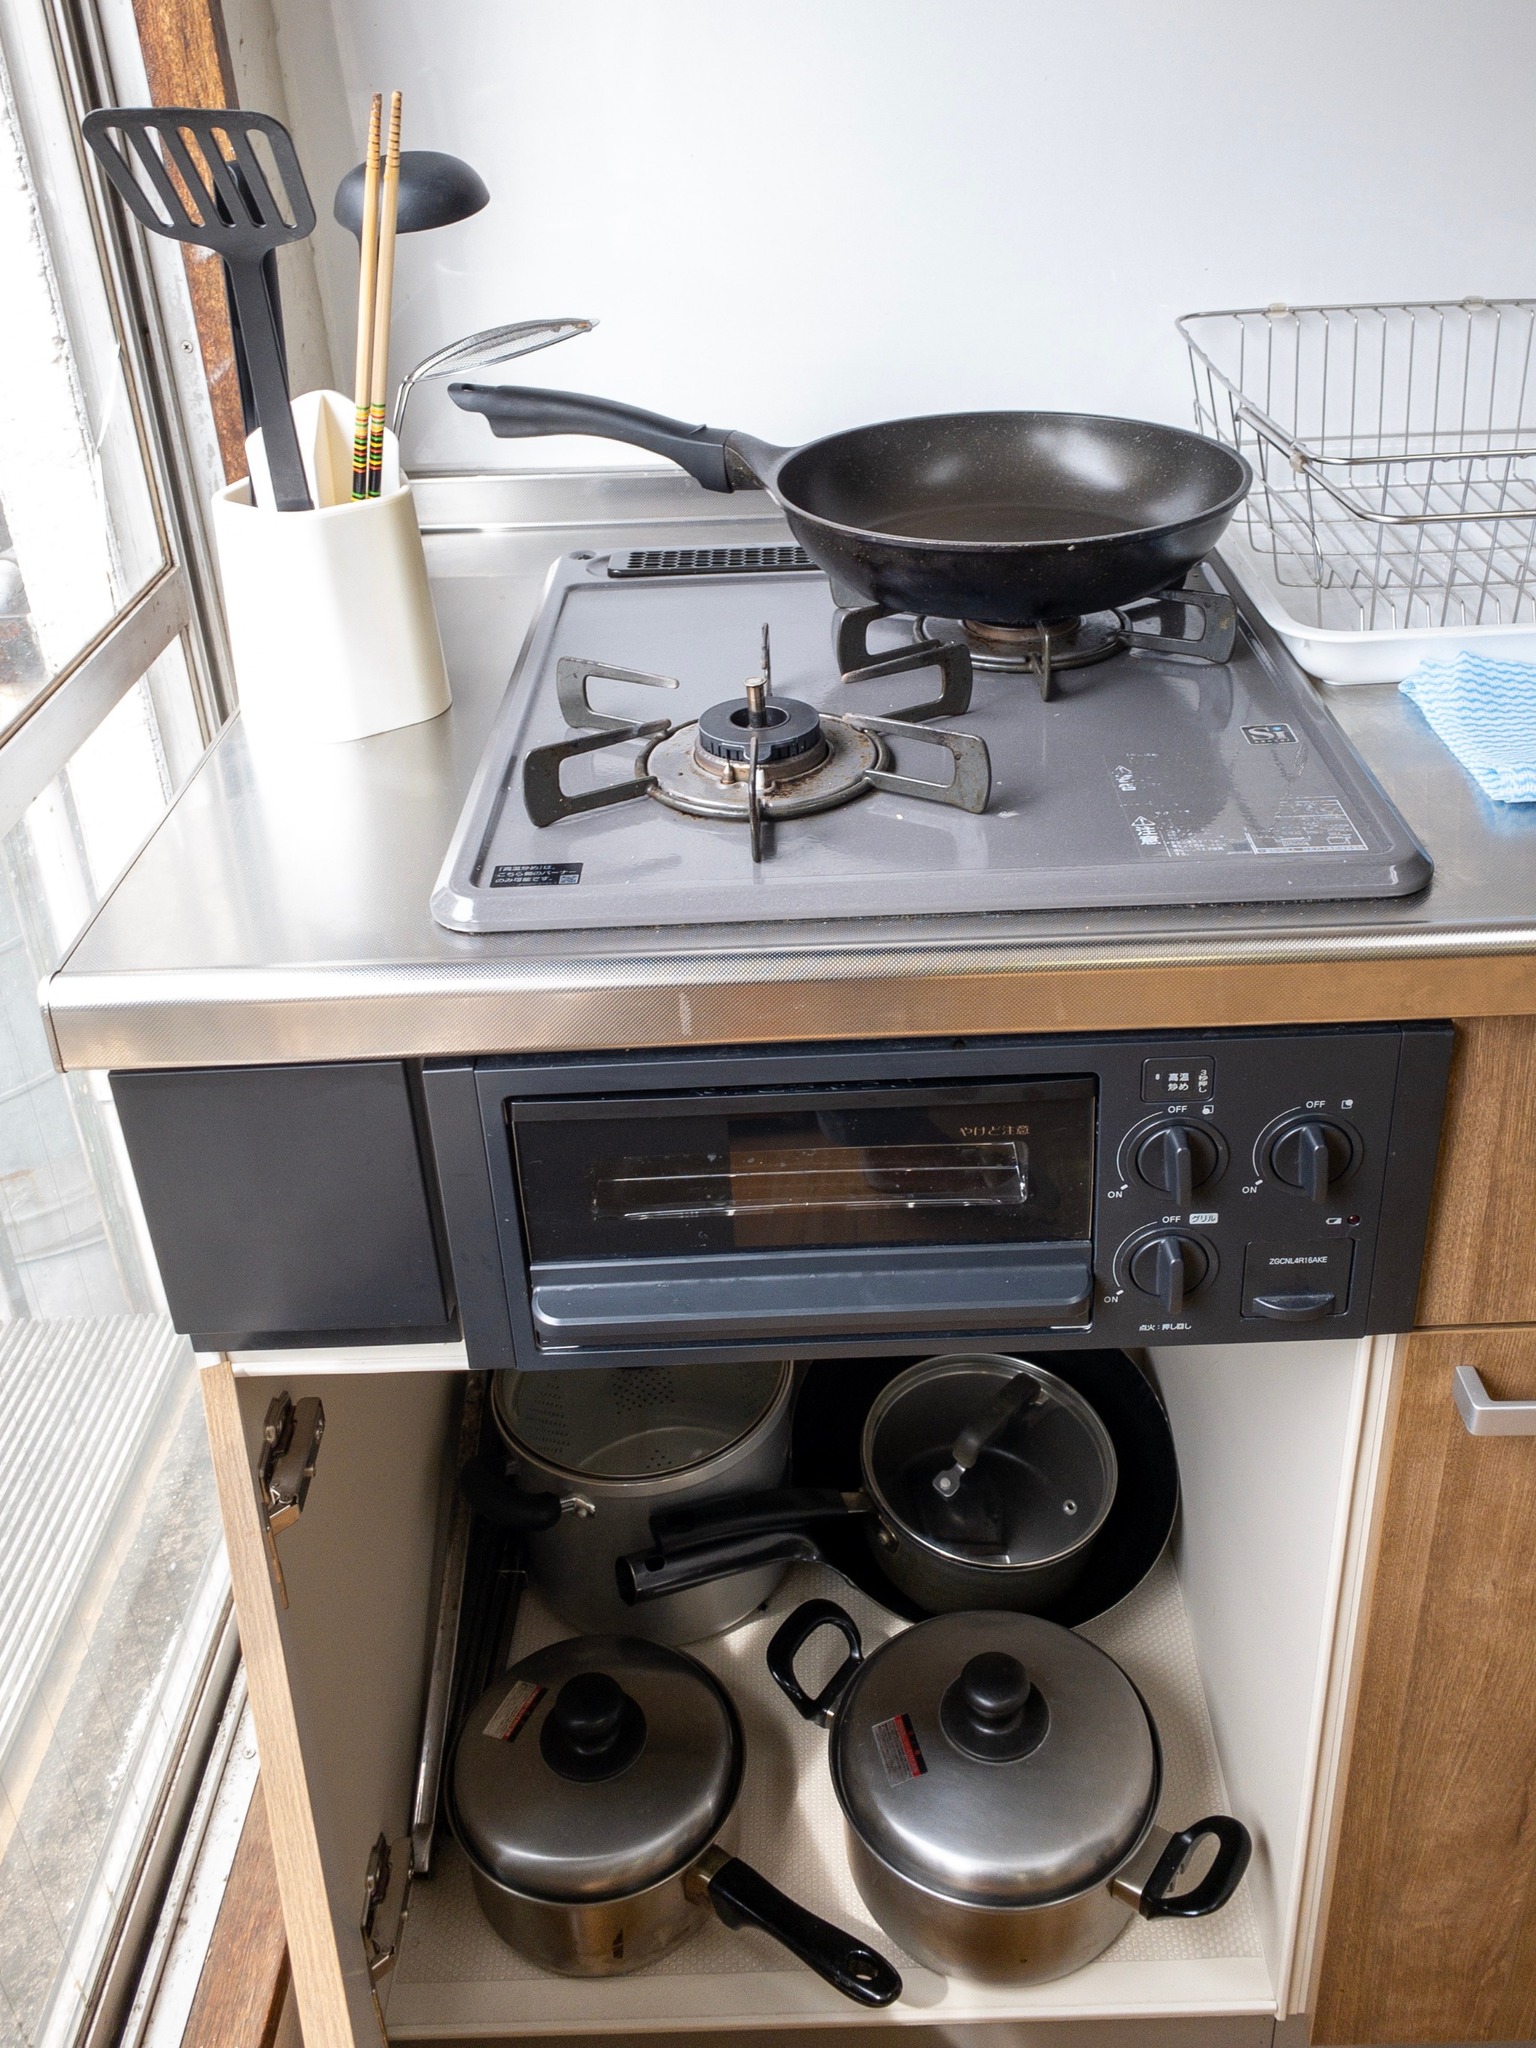 Spacious kitchen with kitchen appliances.